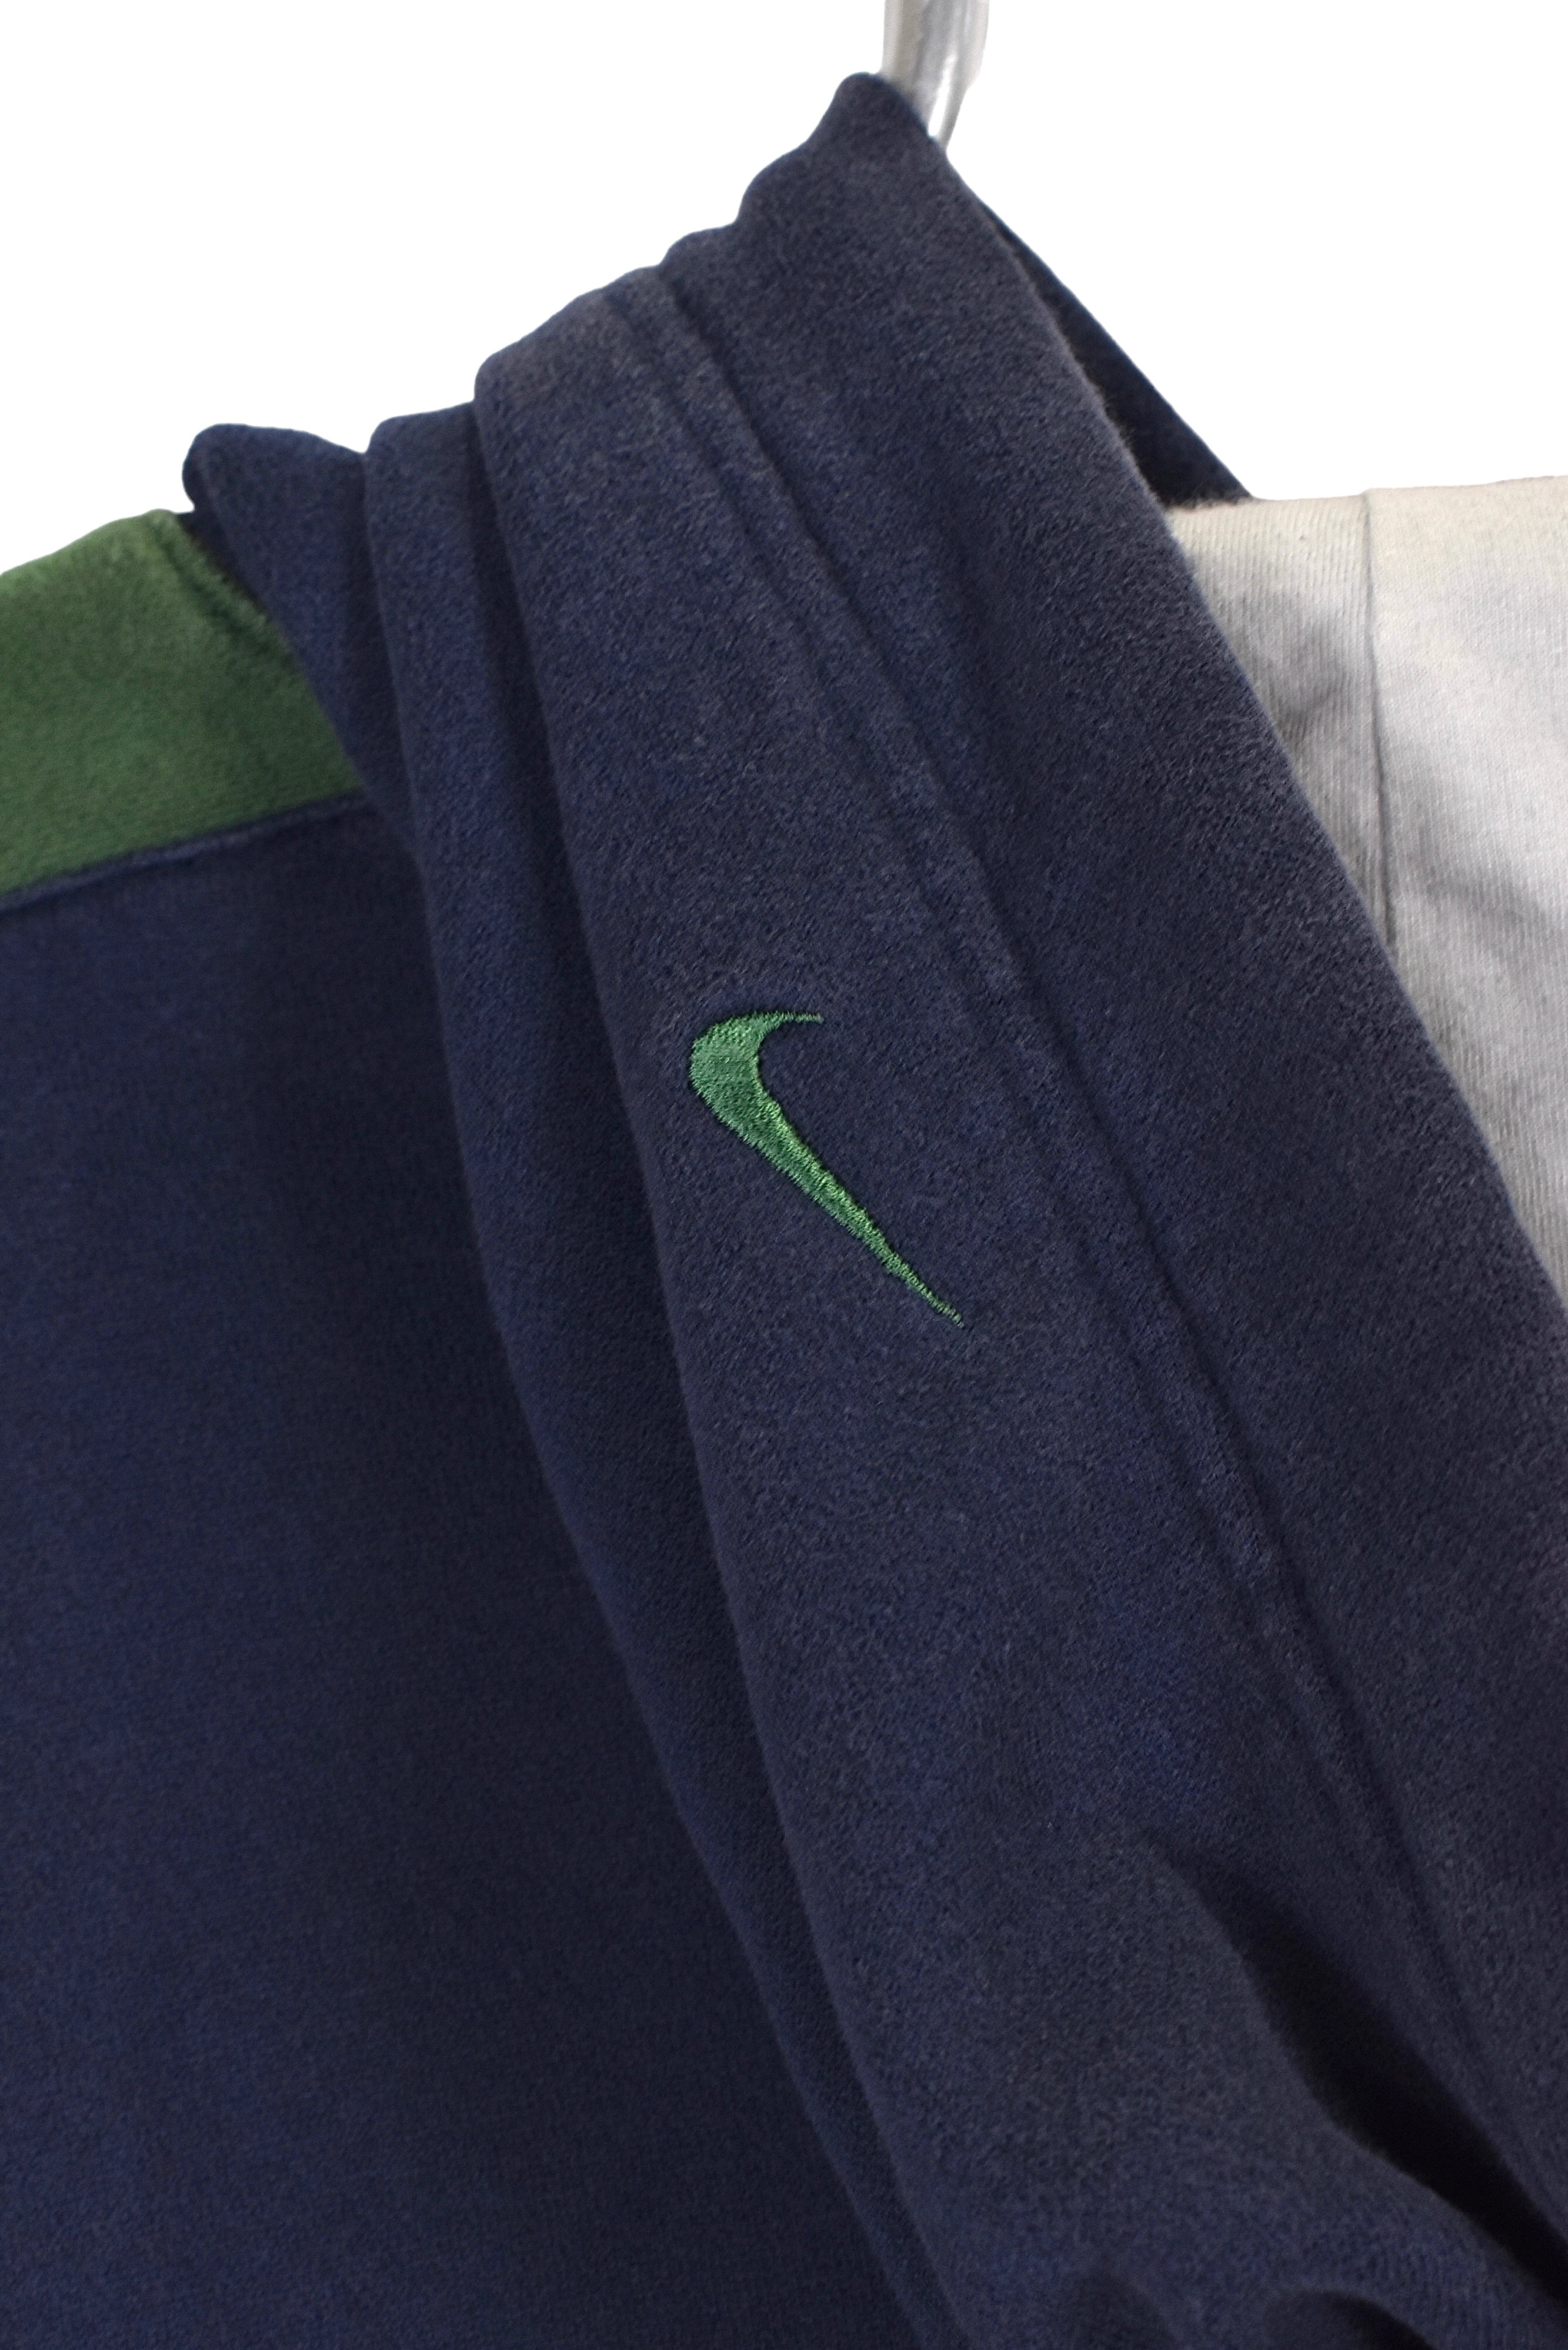 Vintage Nike hoodie, navy embroidered sweatshirt - Large